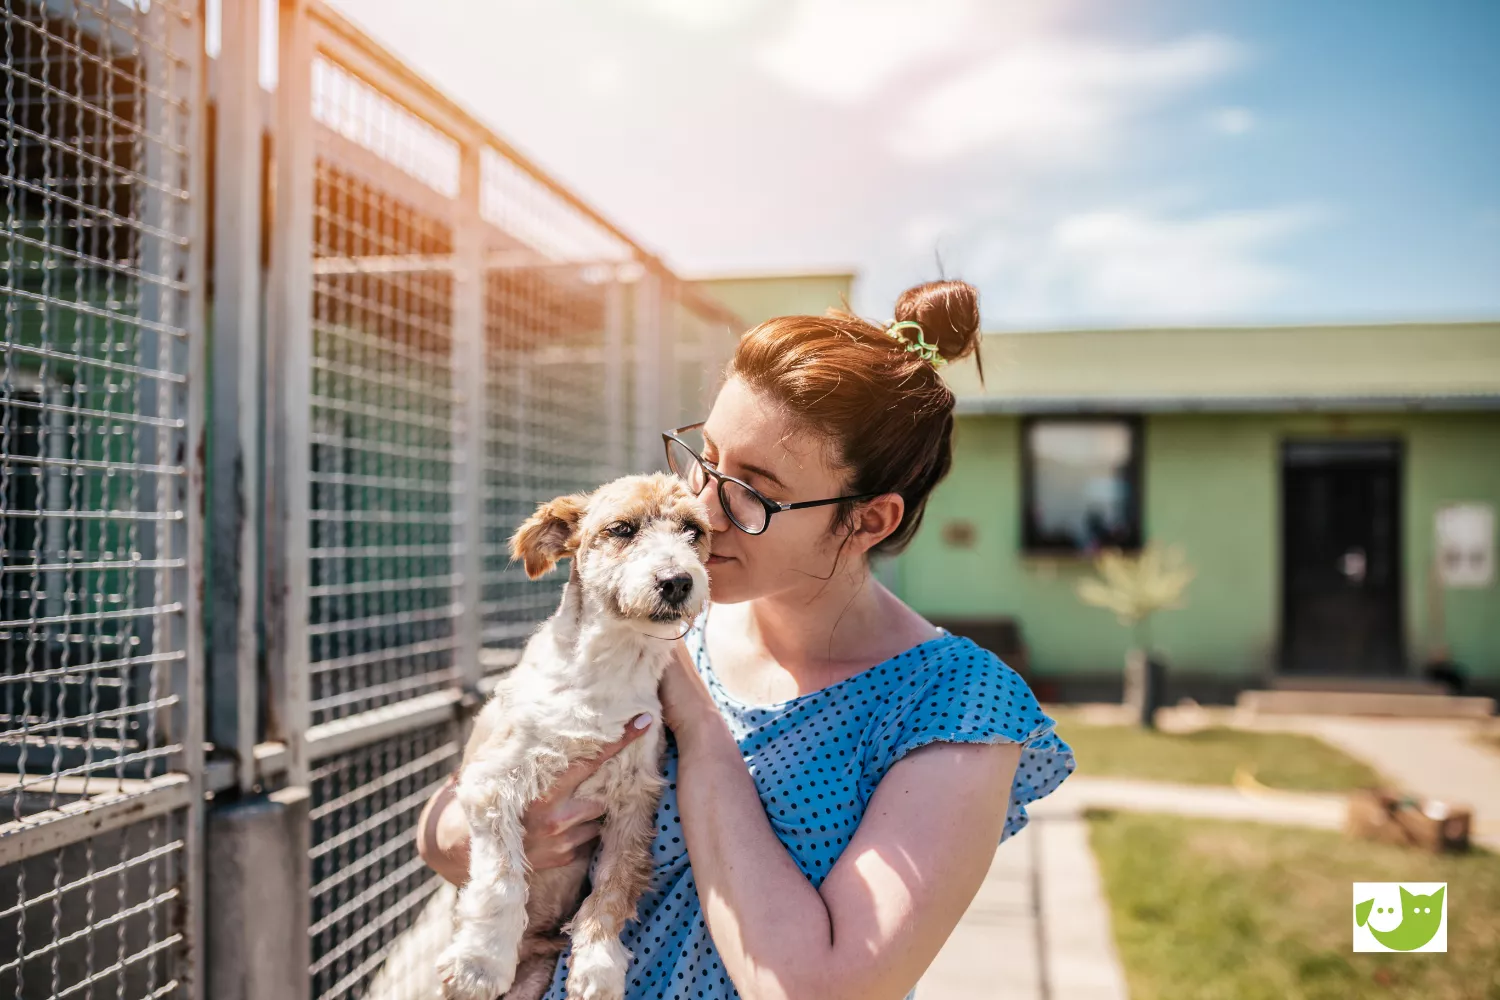 Mitgliedschaft - Frau kuschelt mit einem Hund in einem Tierheim